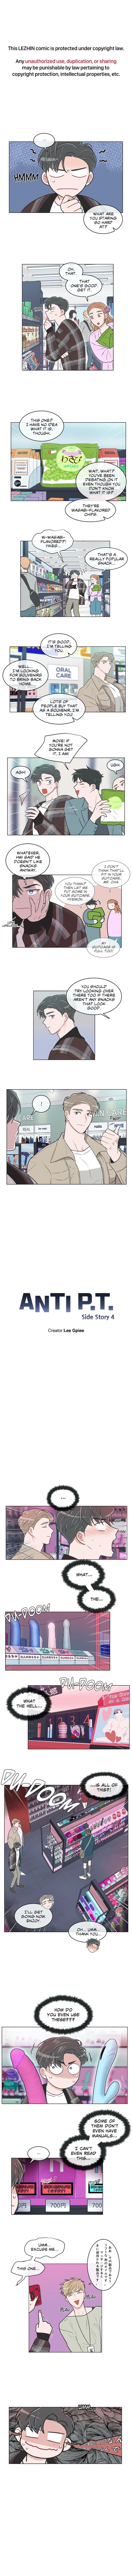 Anti P.t. - Page 1